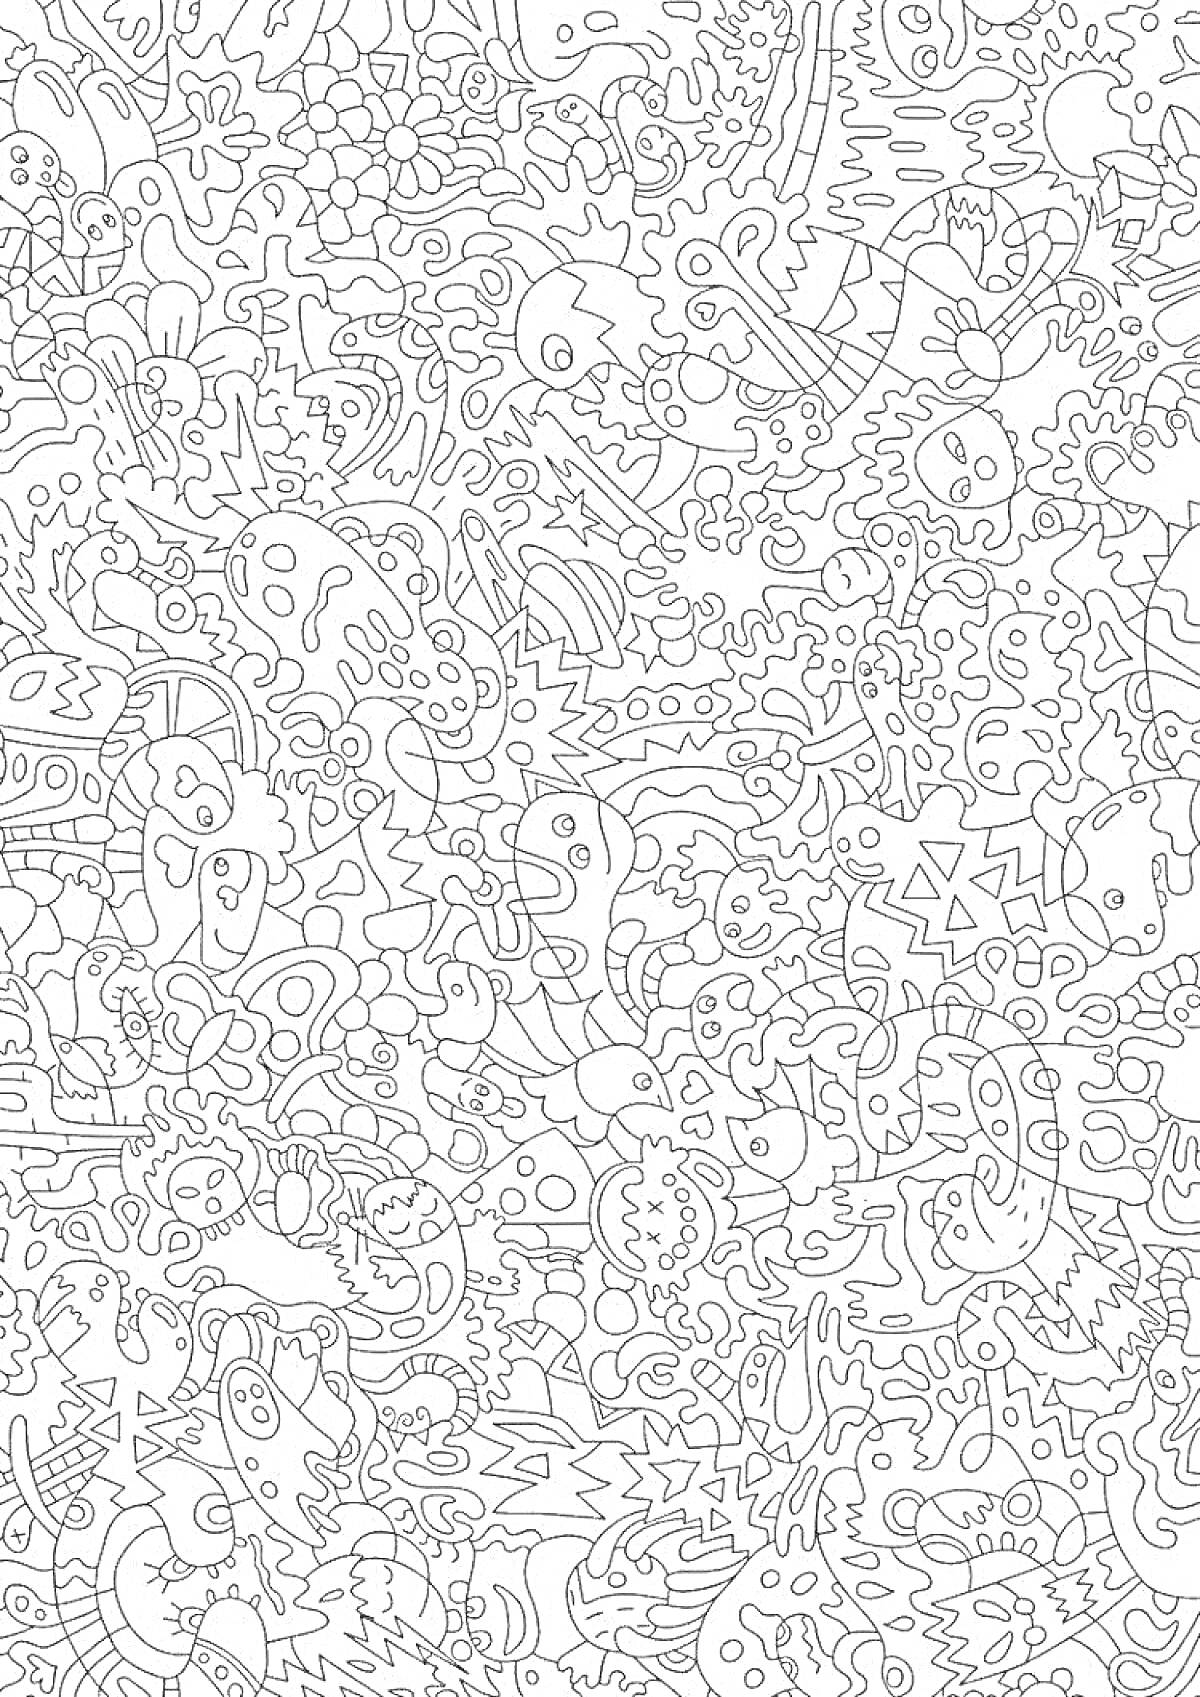 Раскраска Дудлы: животные, растения и абстрактные формы в хаотичном стиле